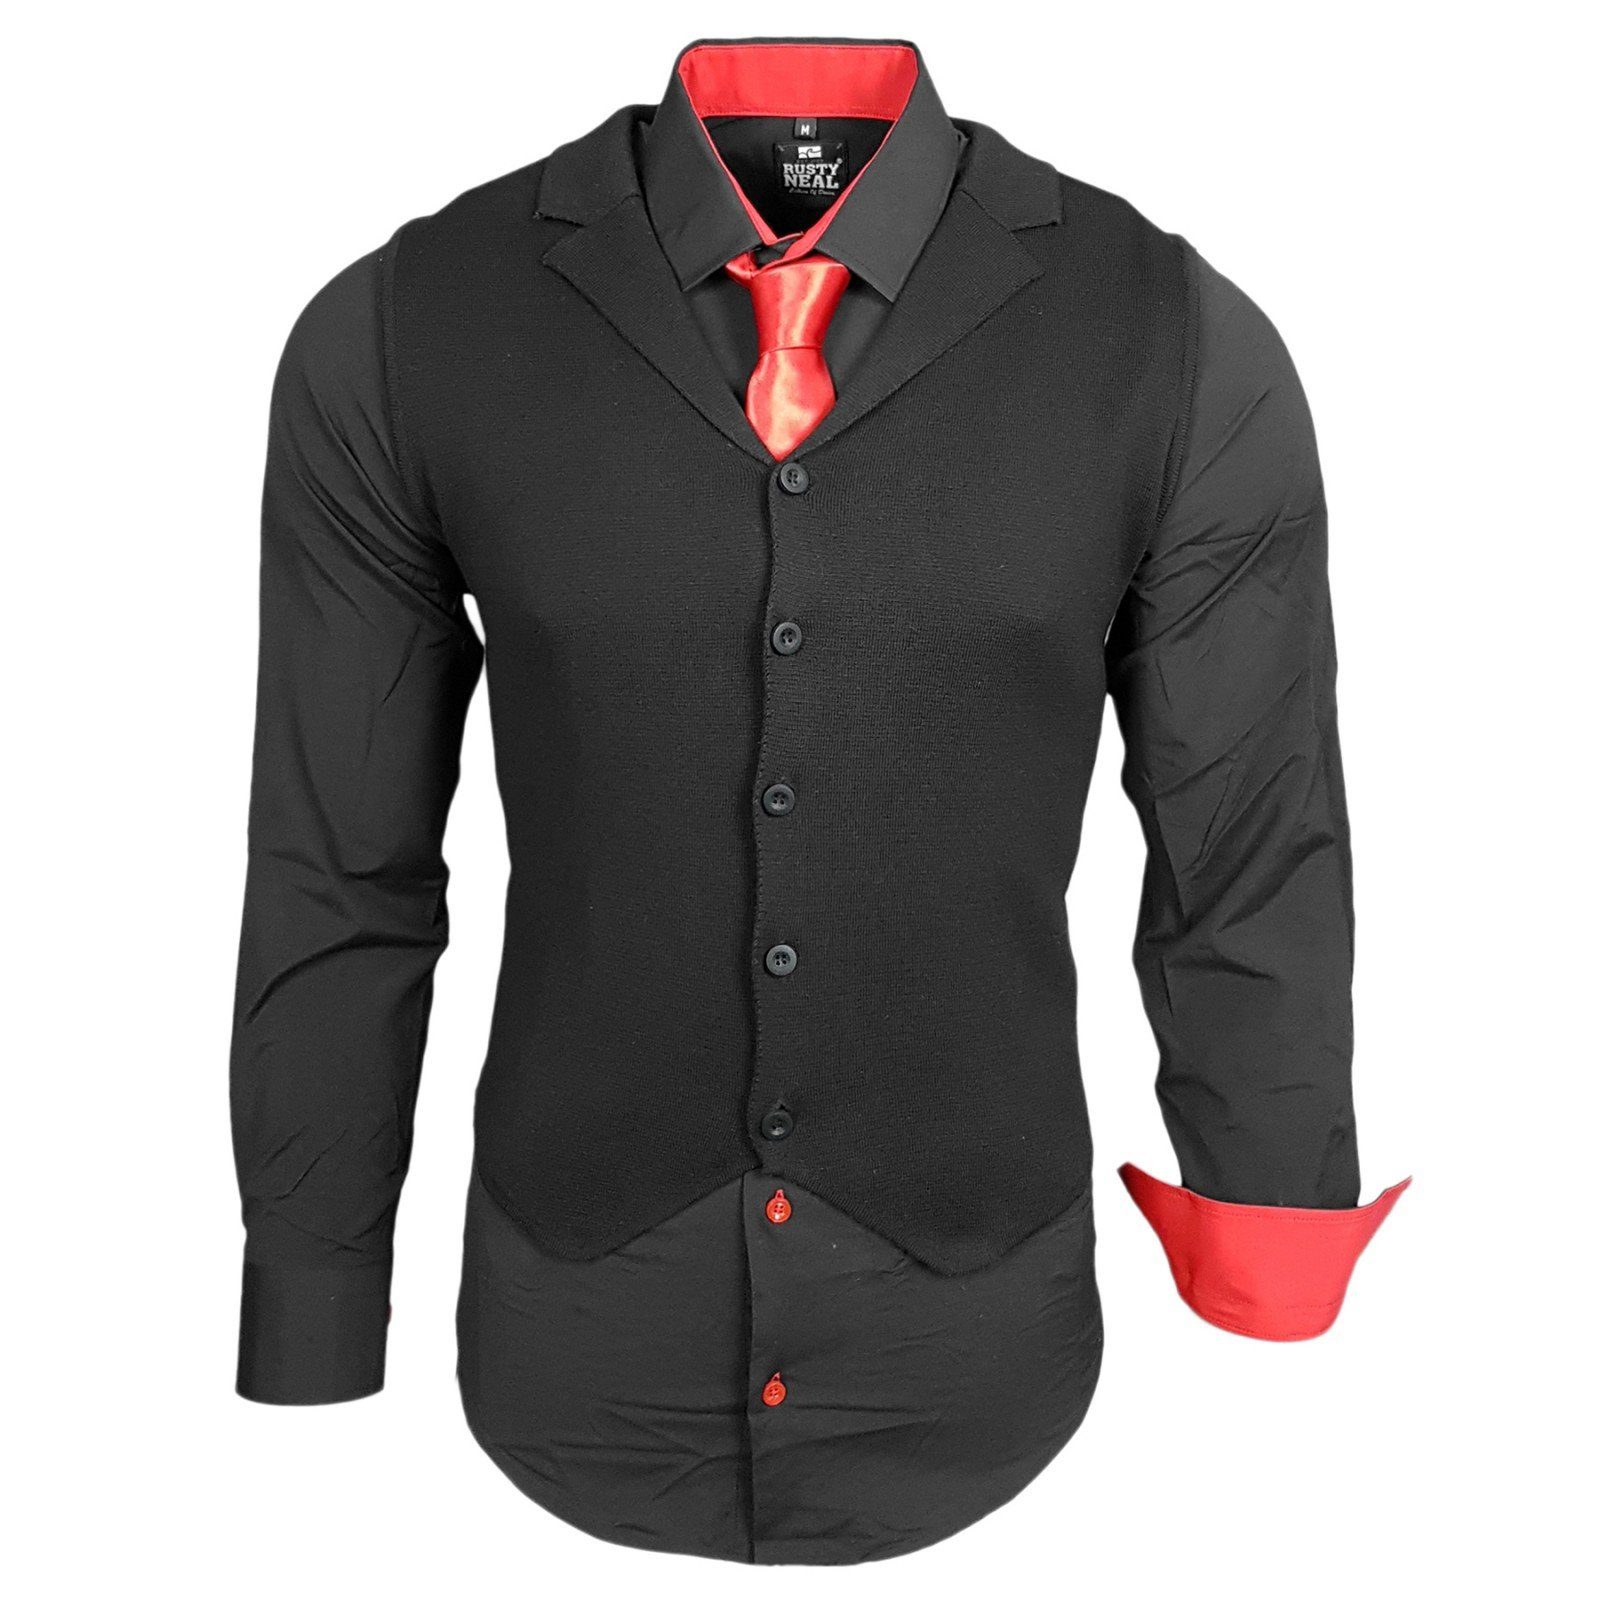 Rusty Neal Hemdenset bestehend aus Hemd, Weste und Krawatte online kaufen |  OTTO